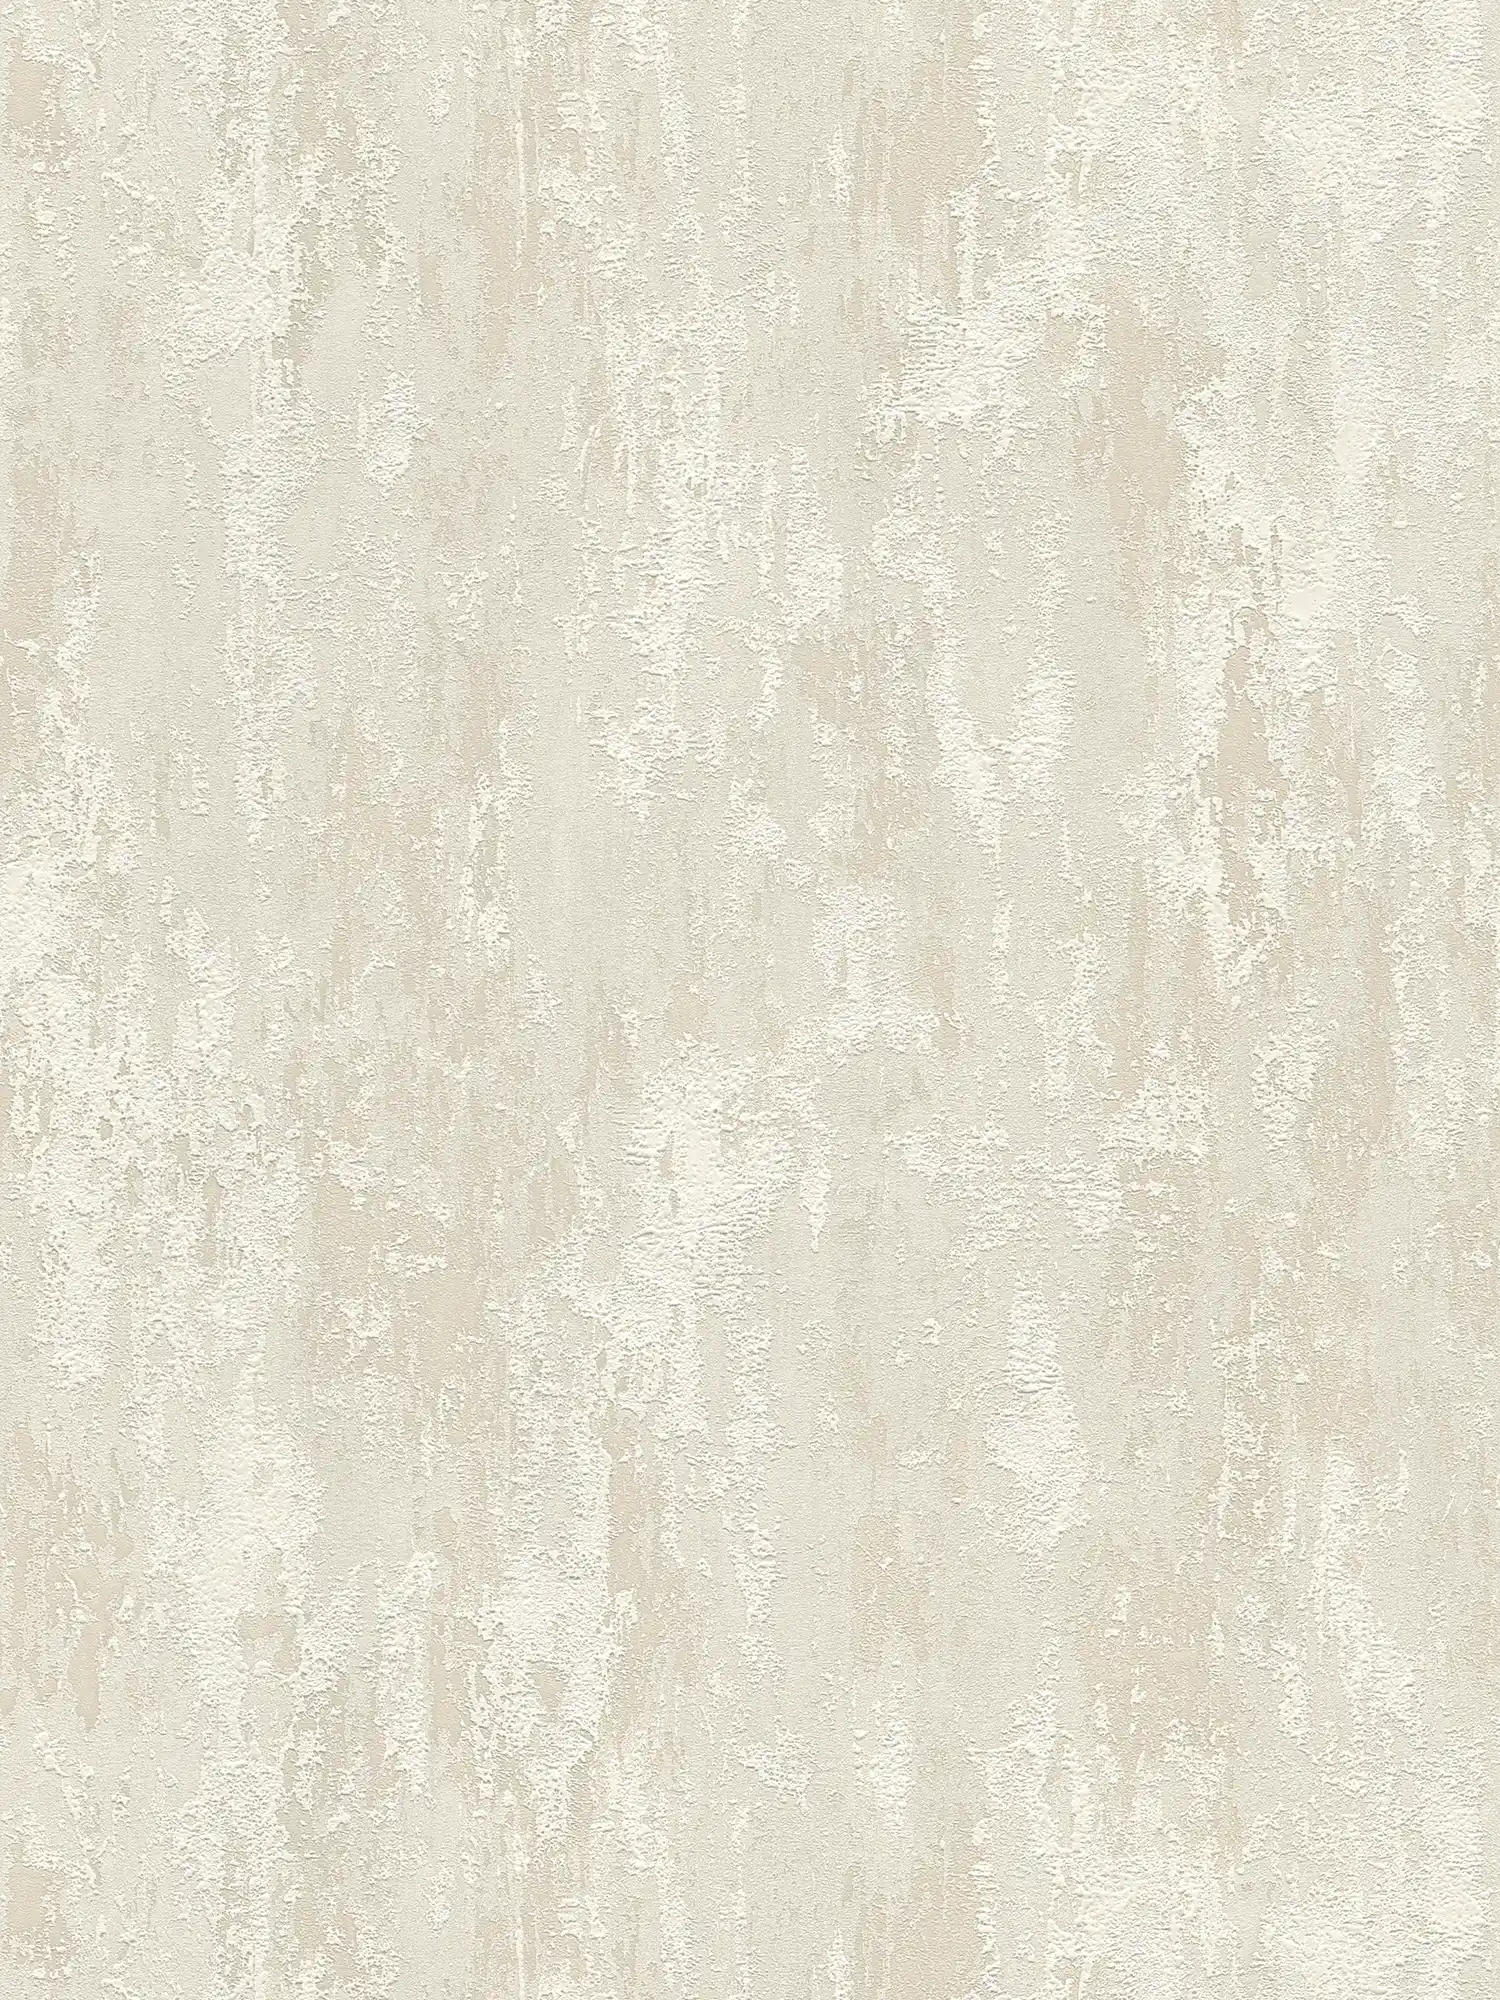 Rustic texture wallpaper with plaster look - beige, cream, gold
